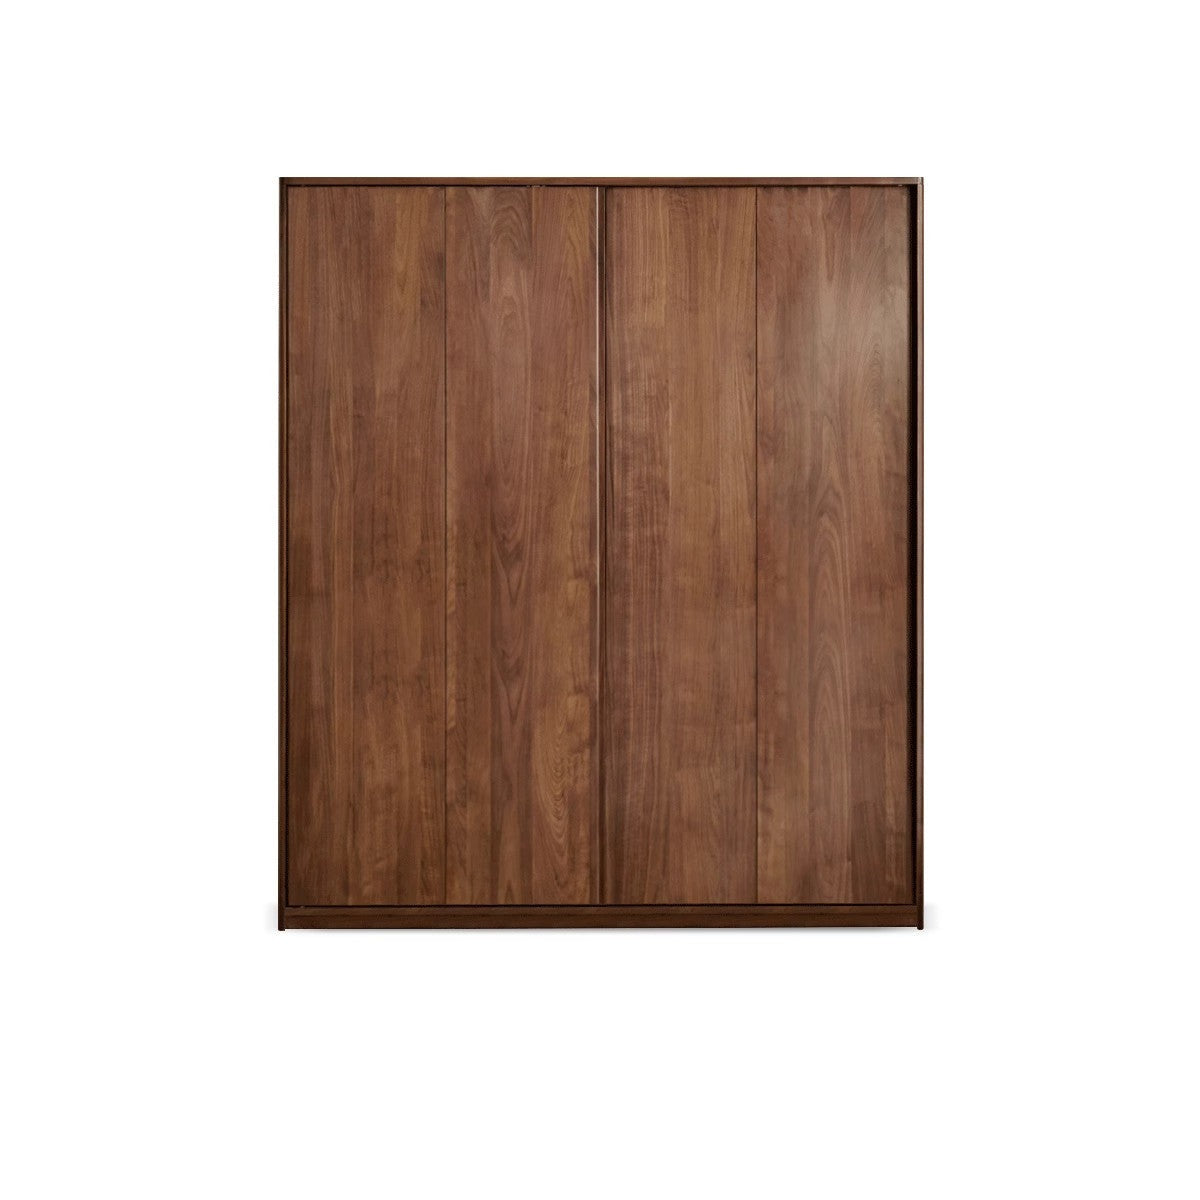 Black Walnut solid wood sliding door wardrobe-